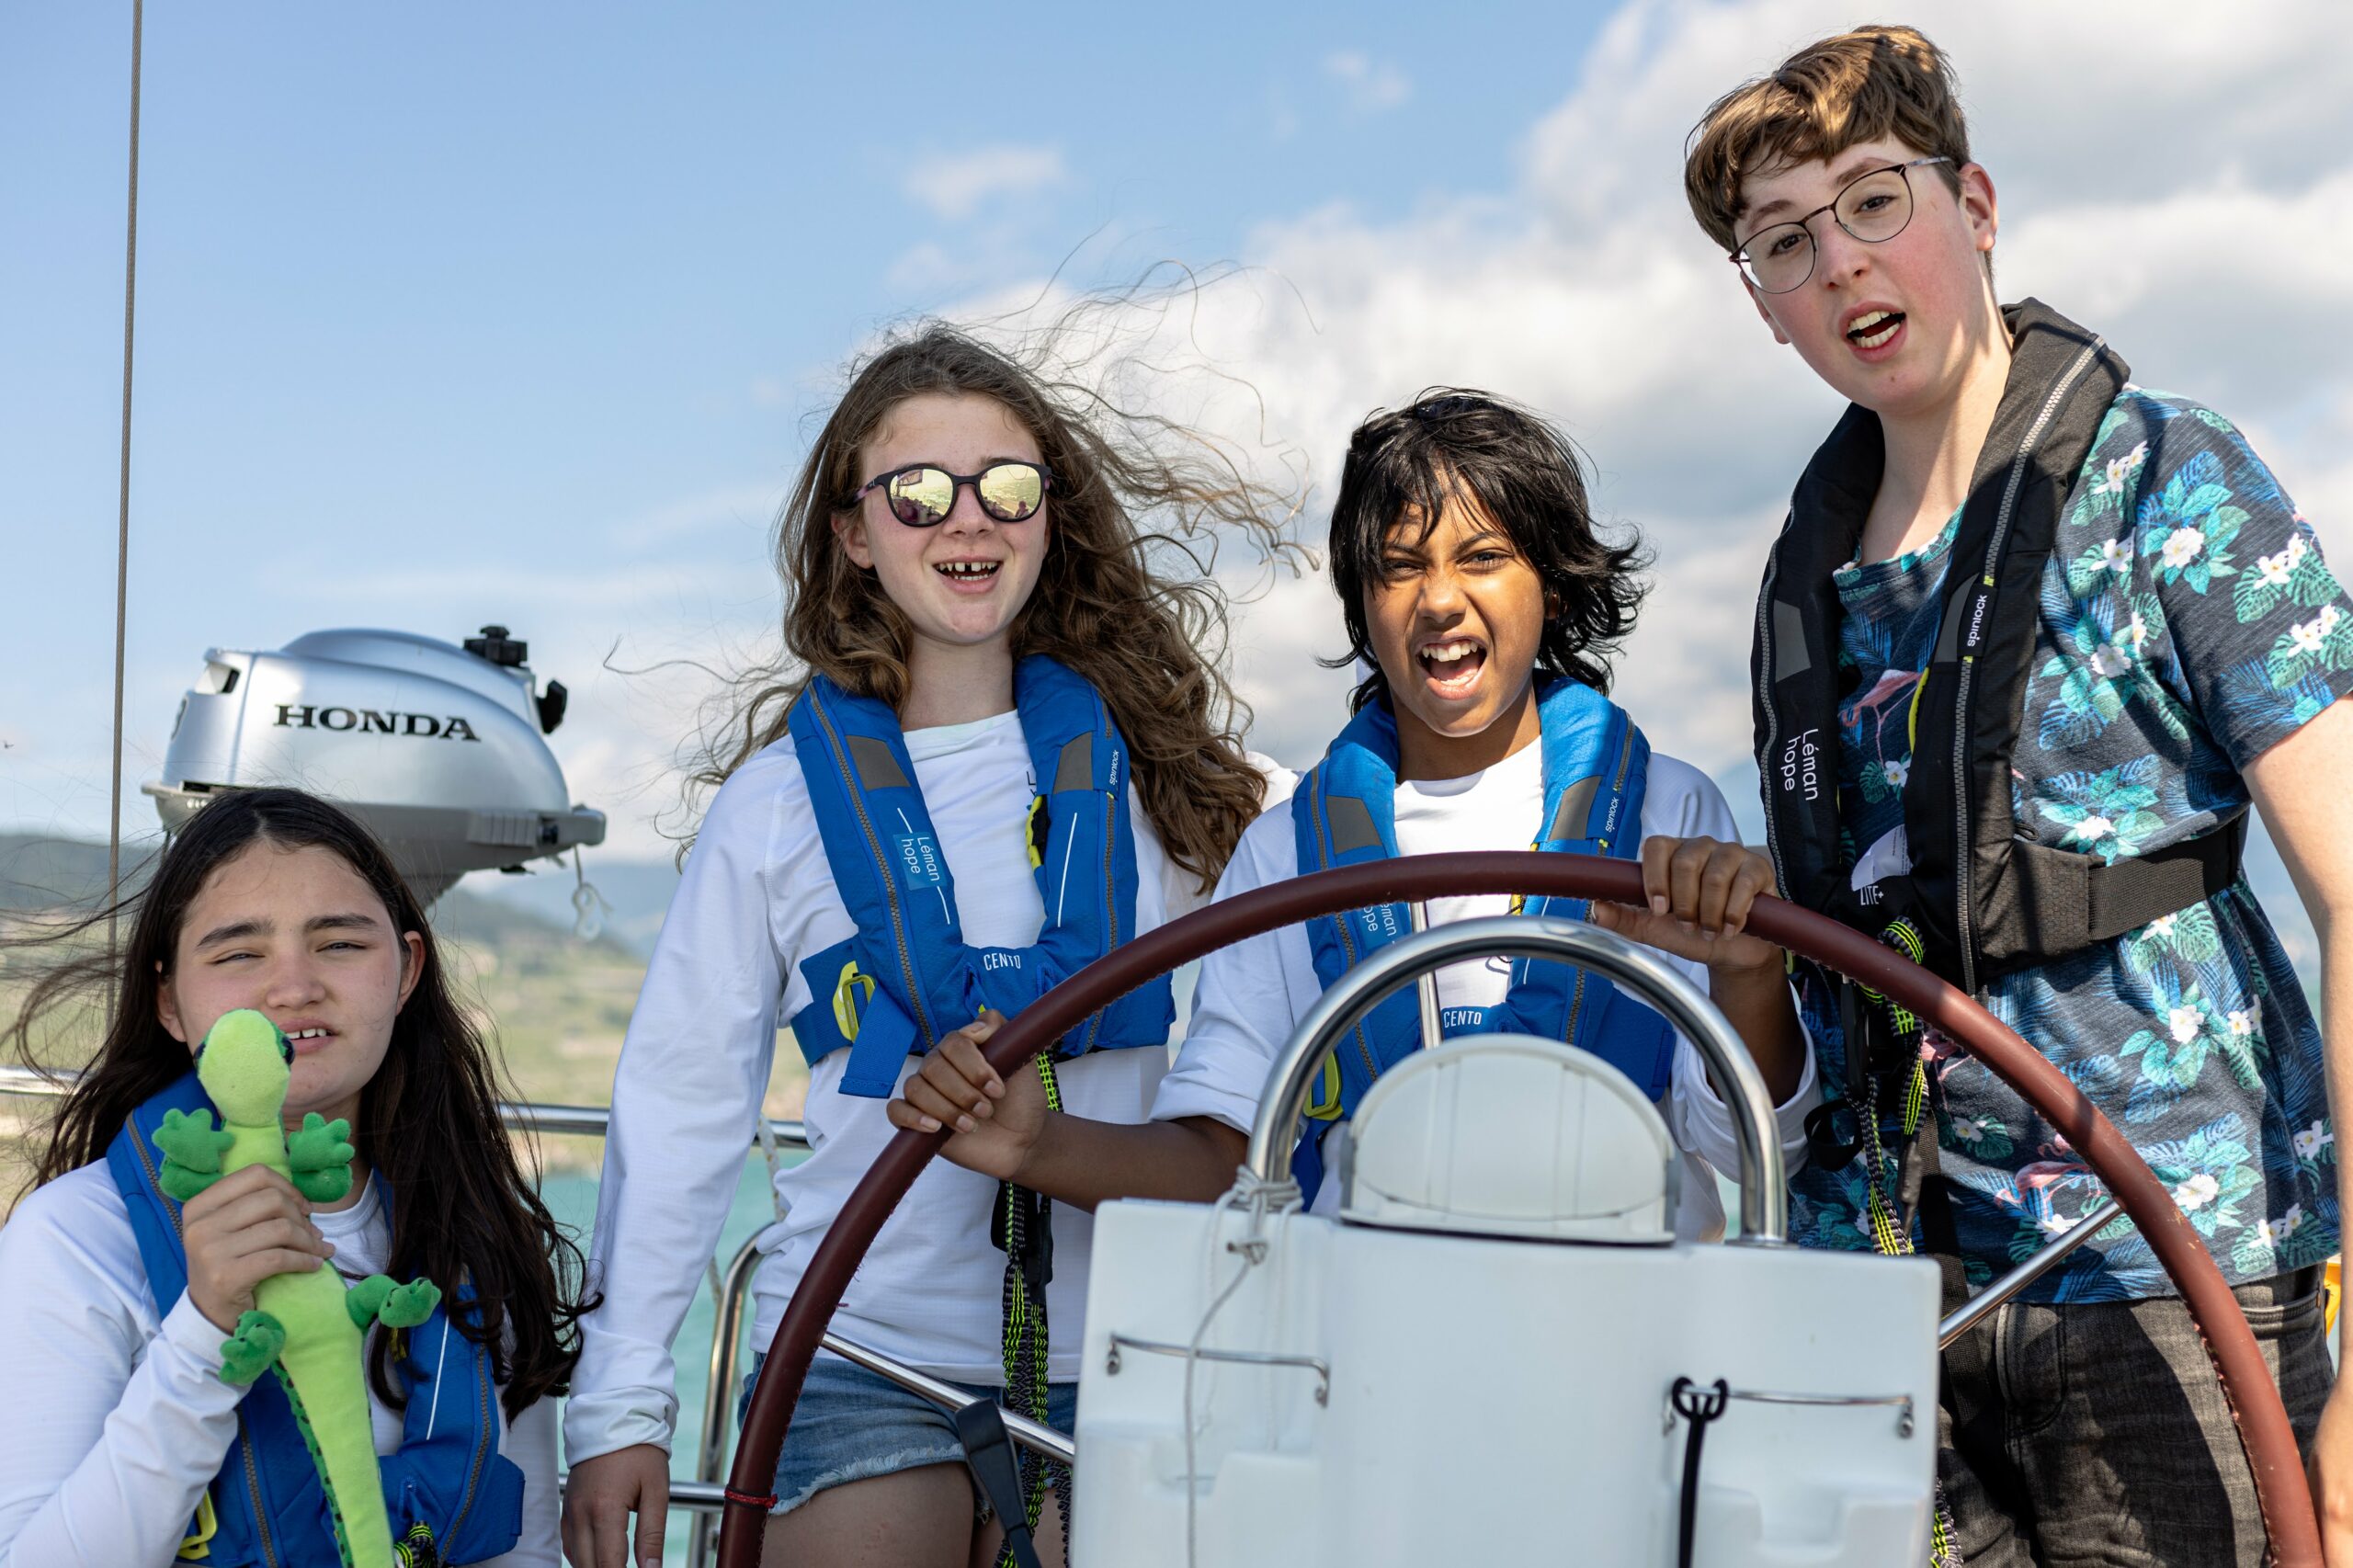 48 Jugendliche, die eine Krebserkrankung überwunden haben, können diesen Sommer auf dem Genfersee segeln